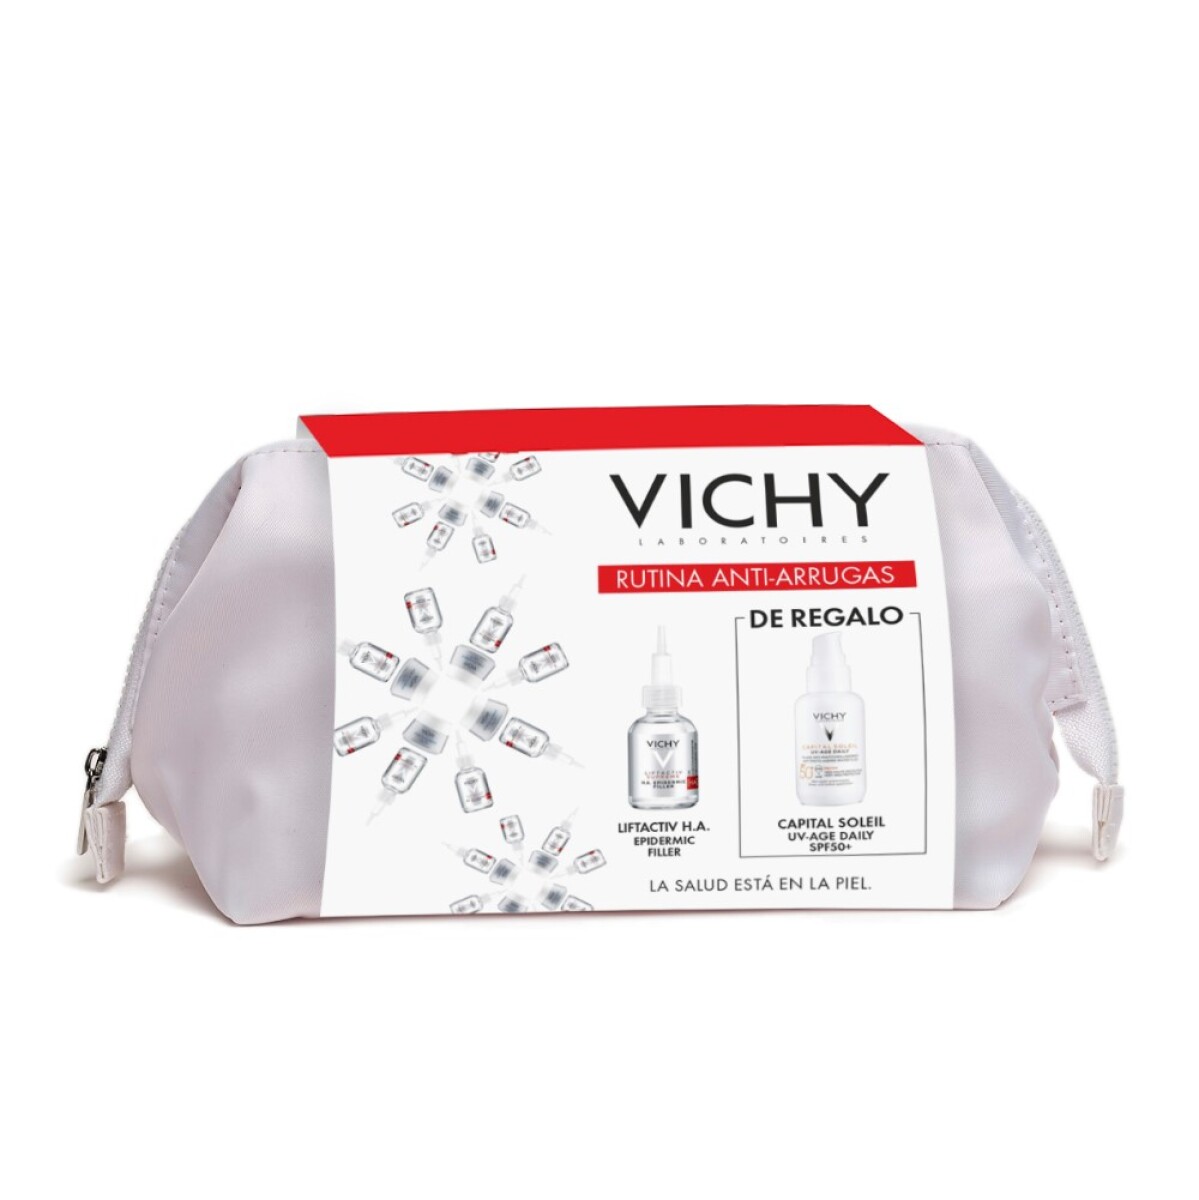 Pack Vichy Rutina Anti Arrugas - 001 